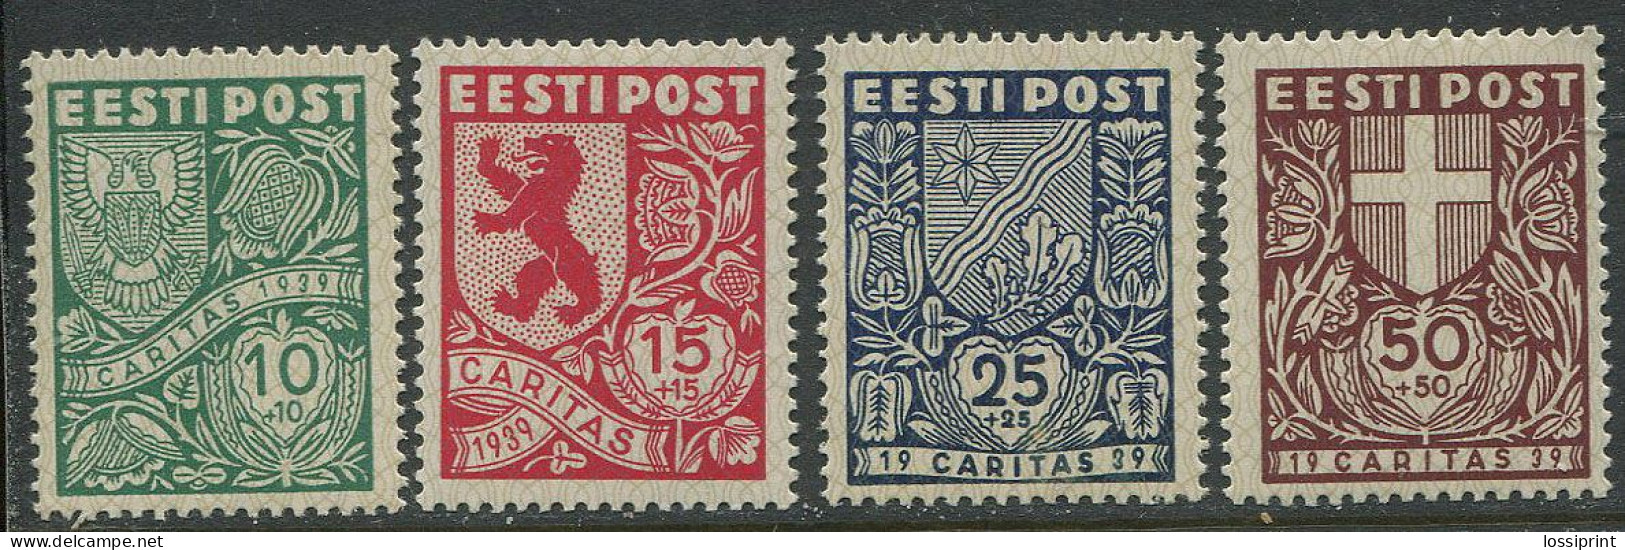 Estonia:Unused Stamps Serie Caritas 1939, Coat Of Arms, 1939, MNH - Estland